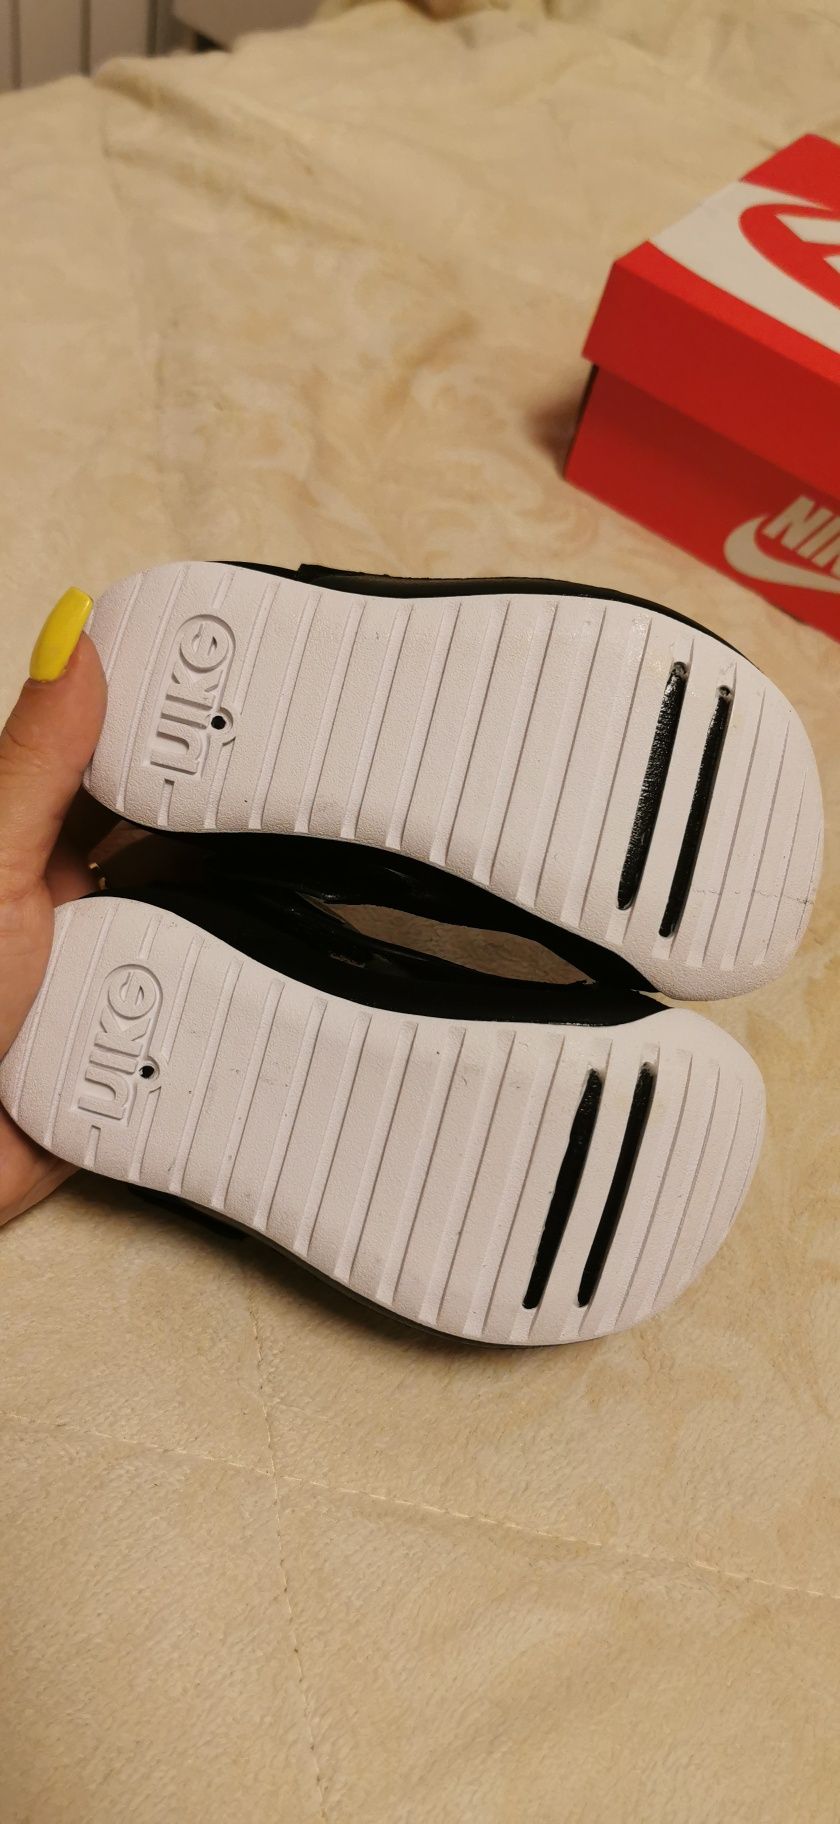 Нови сандали Nike Sunray Protect 3